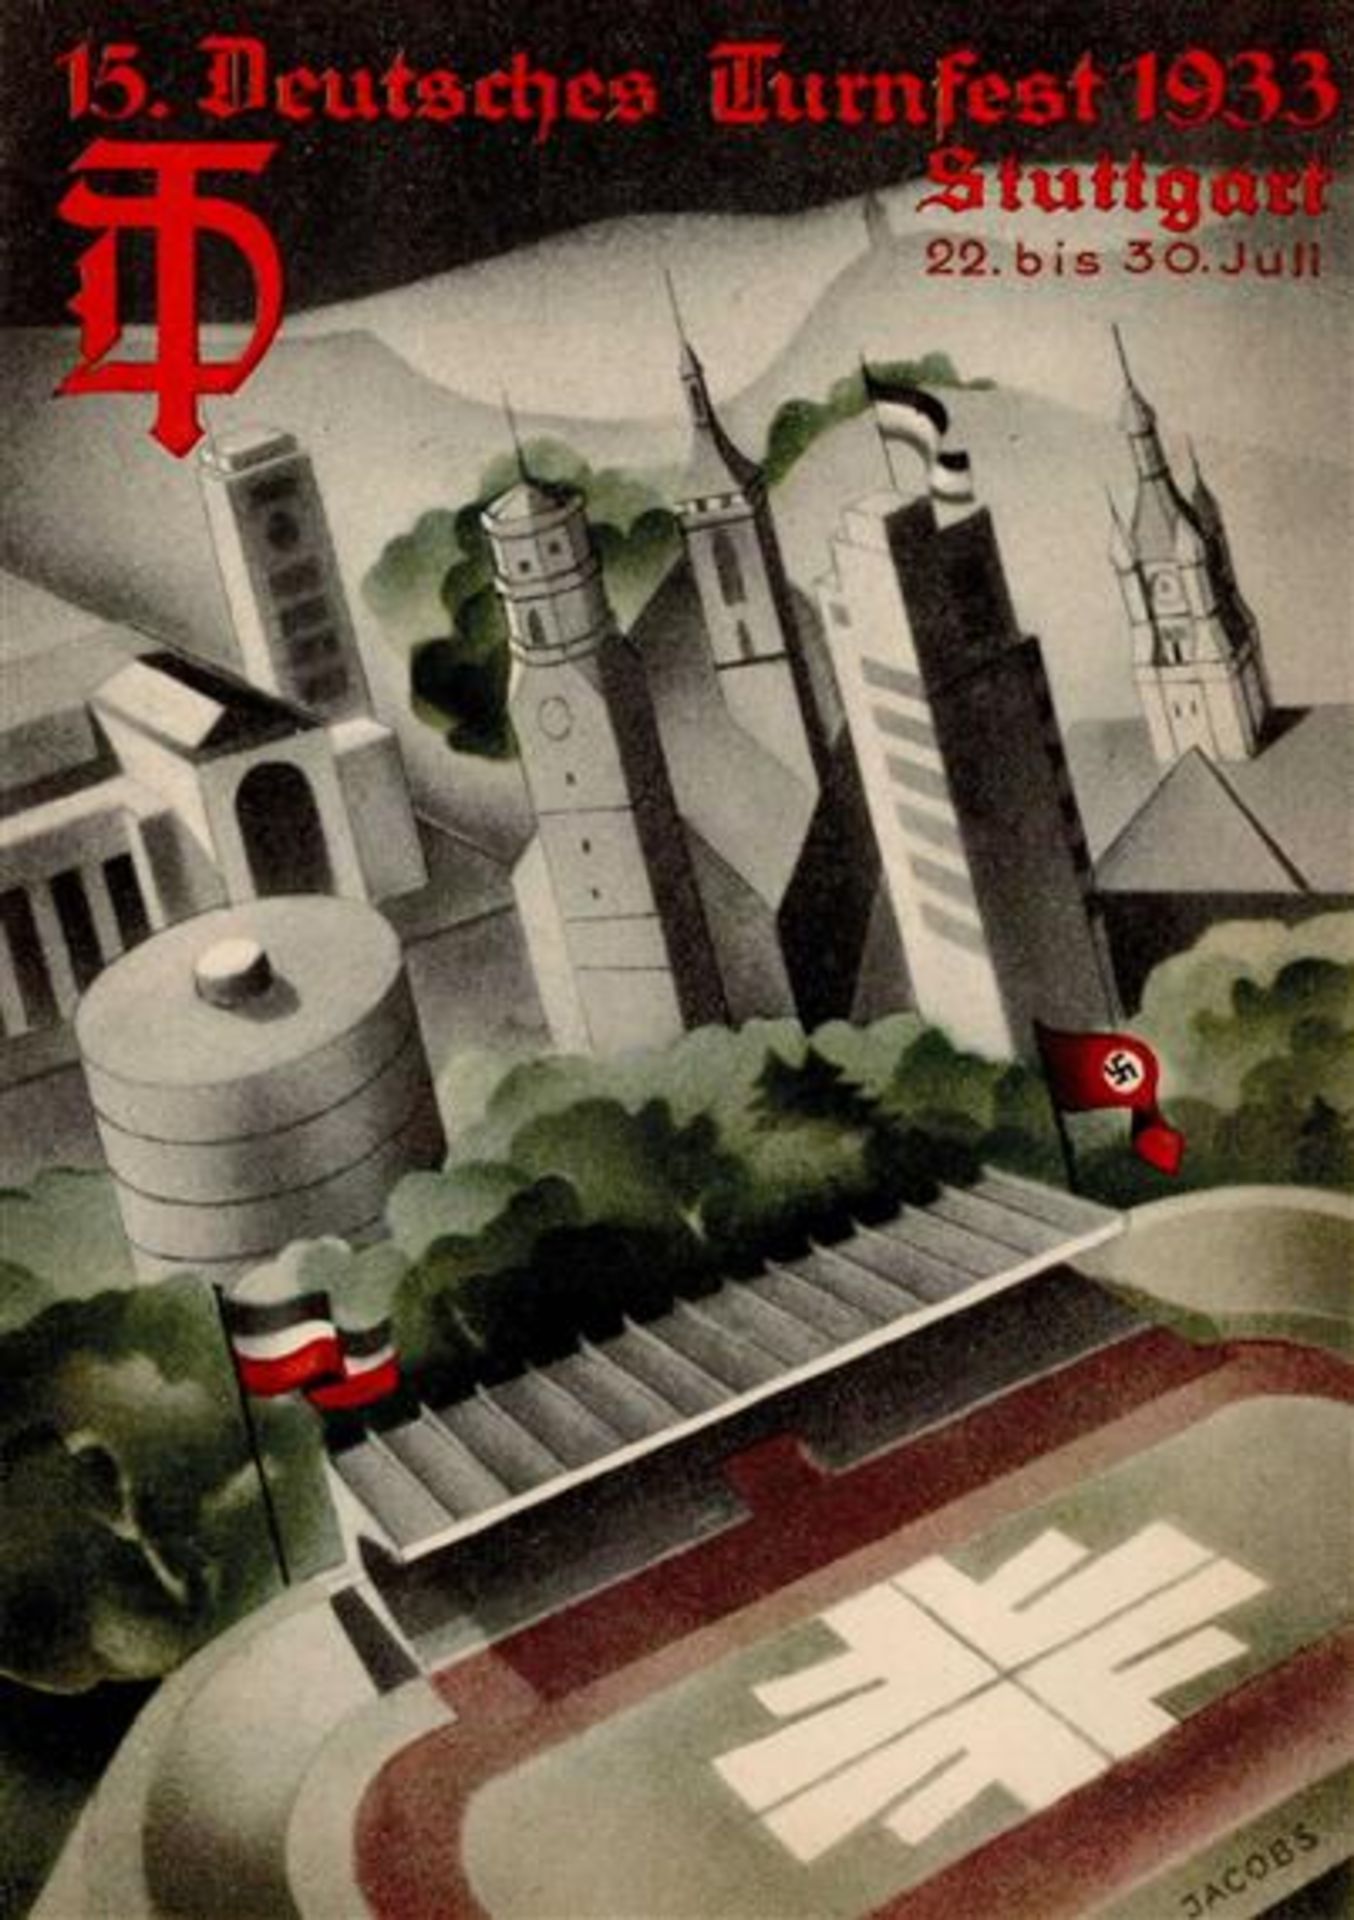 STUTTGART WK II - 15. DEUTSCHES TURNFEST 1933 Festpostkarte 3 Künstlerkarte sign. Jacobs I